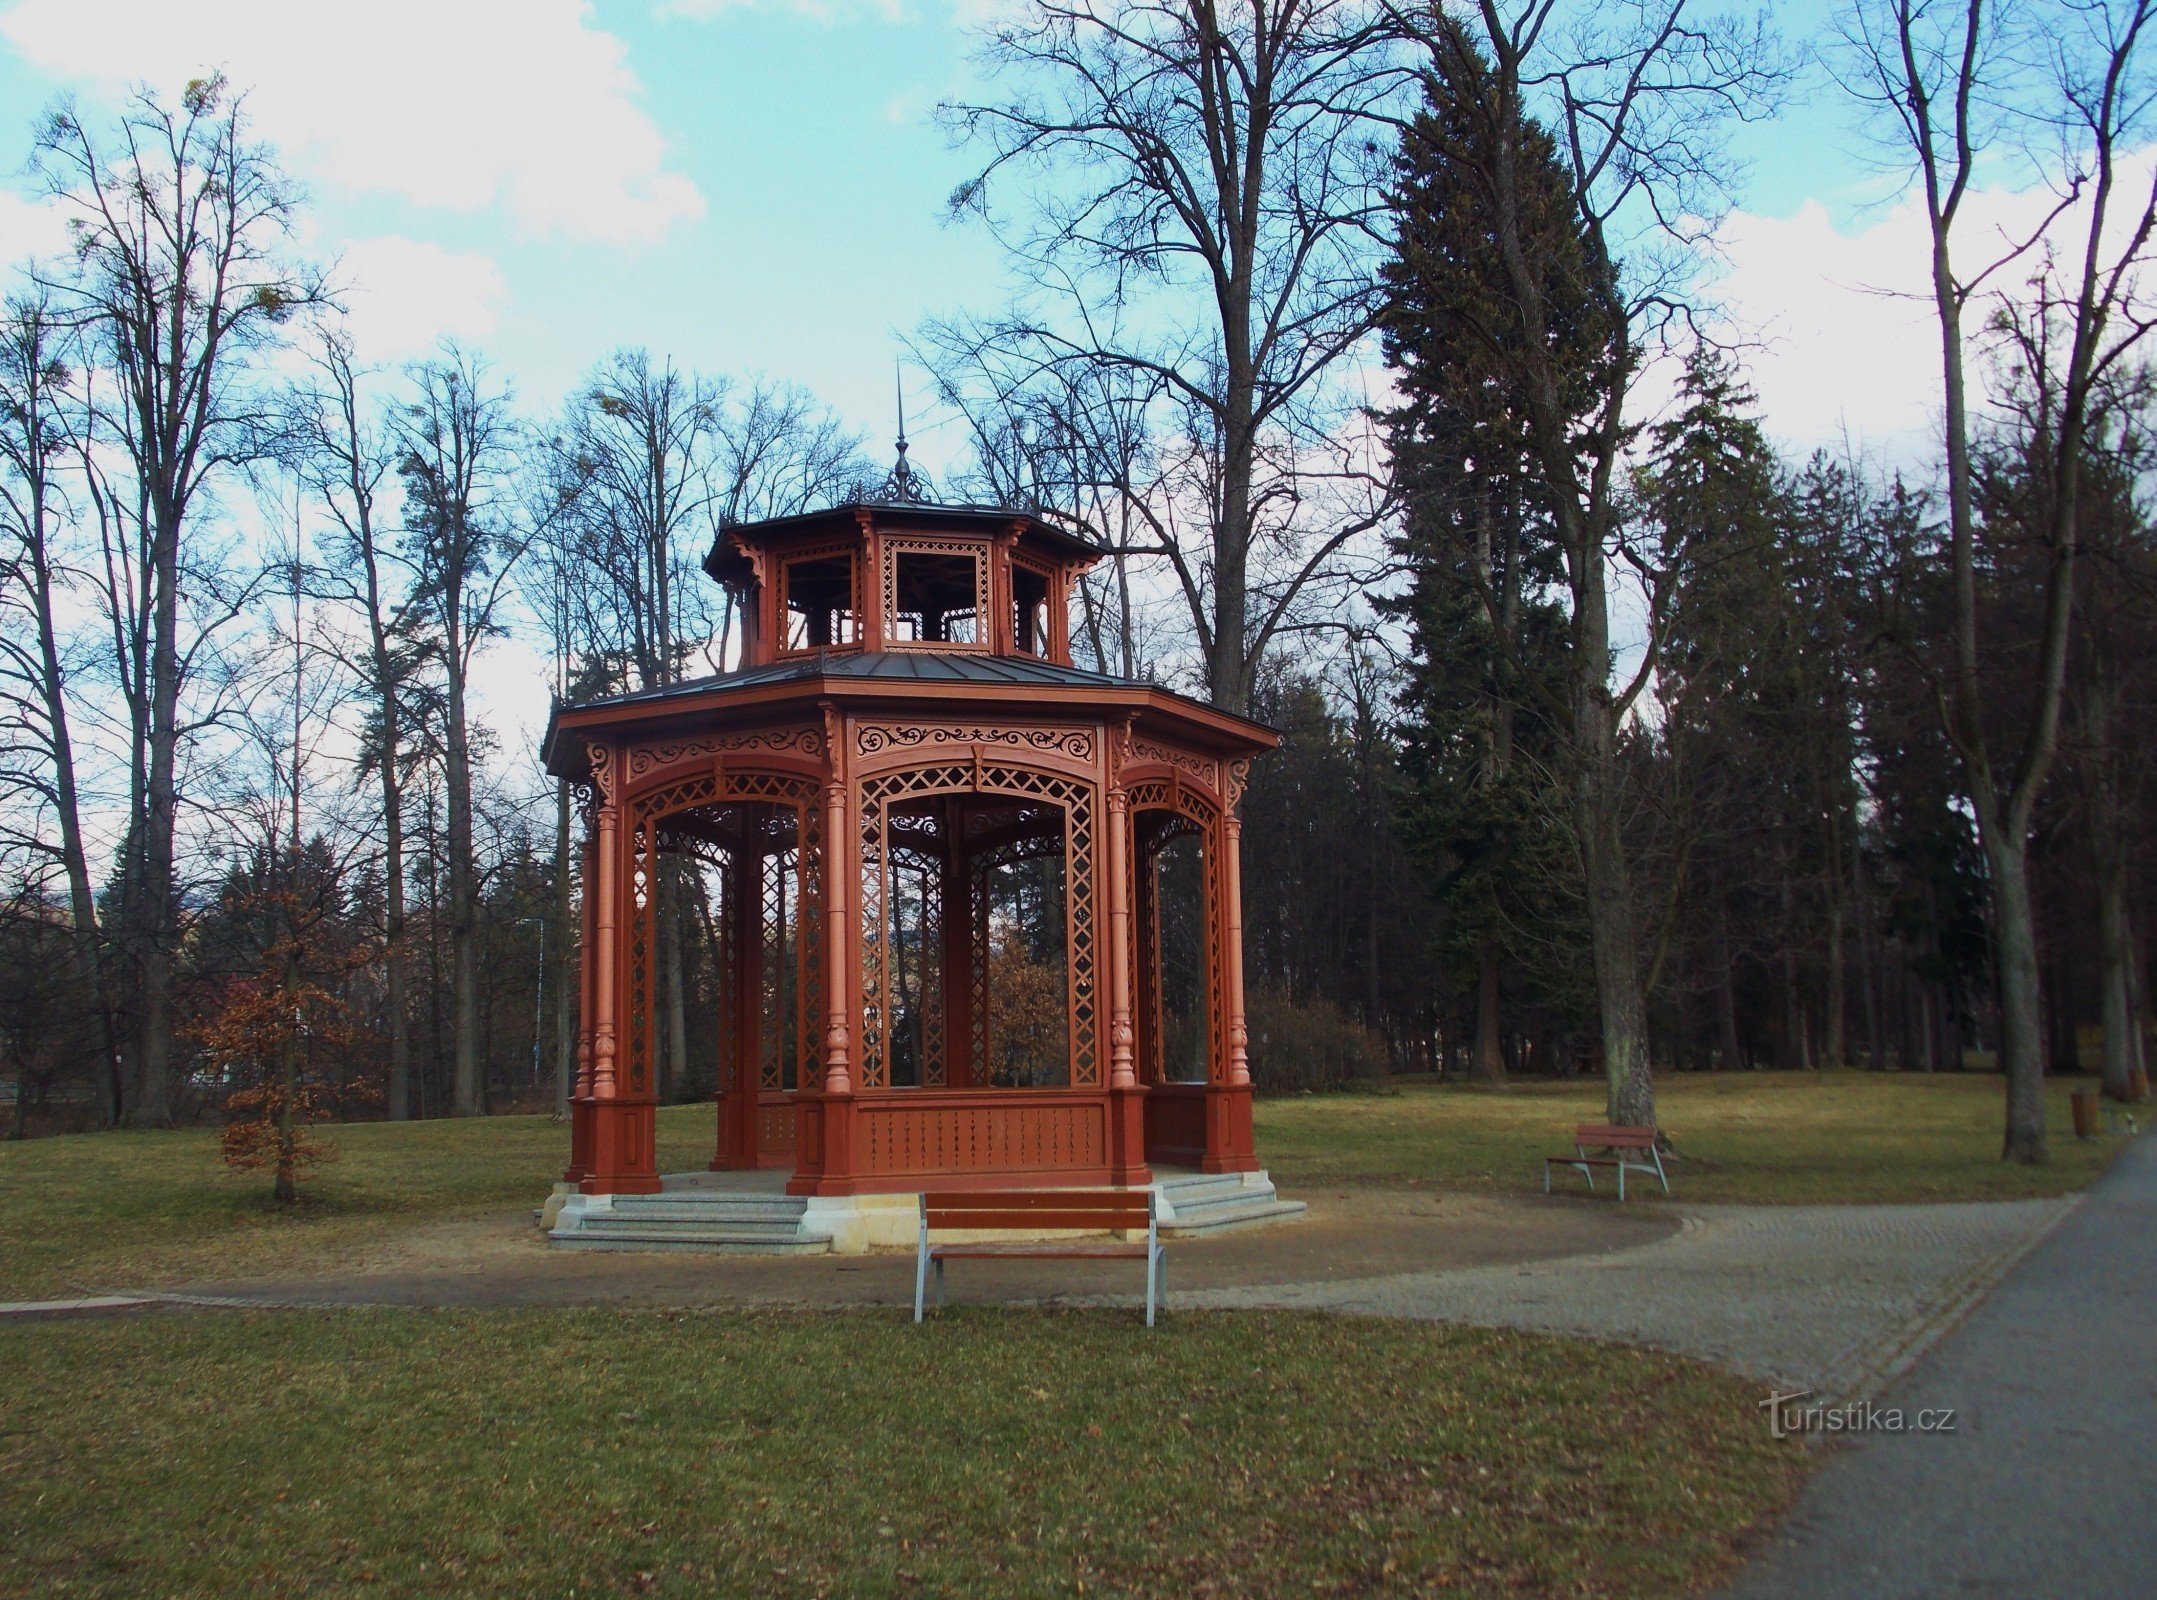 漫步在 Rožnov pod Radhoštěm 的温泉公园